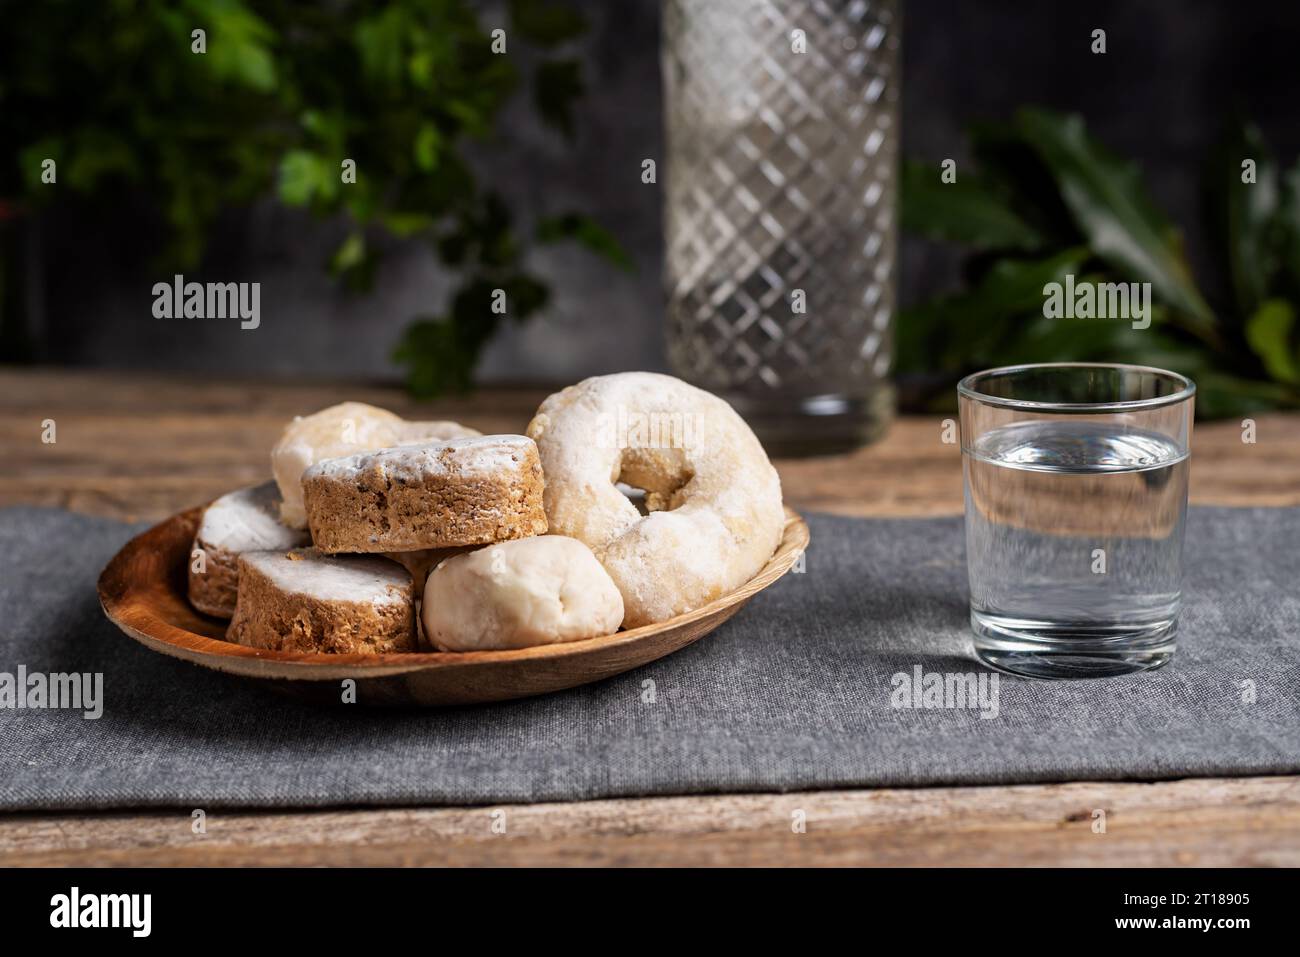 https://c8.alamy.com/compes/2t18905/pan-corto-donuts-de-vino-y-bolleria-de-hojaldre-en-un-plato-de-madera-y-junto-a-un-vaso-pequeno-con-anis-2t18905.jpg